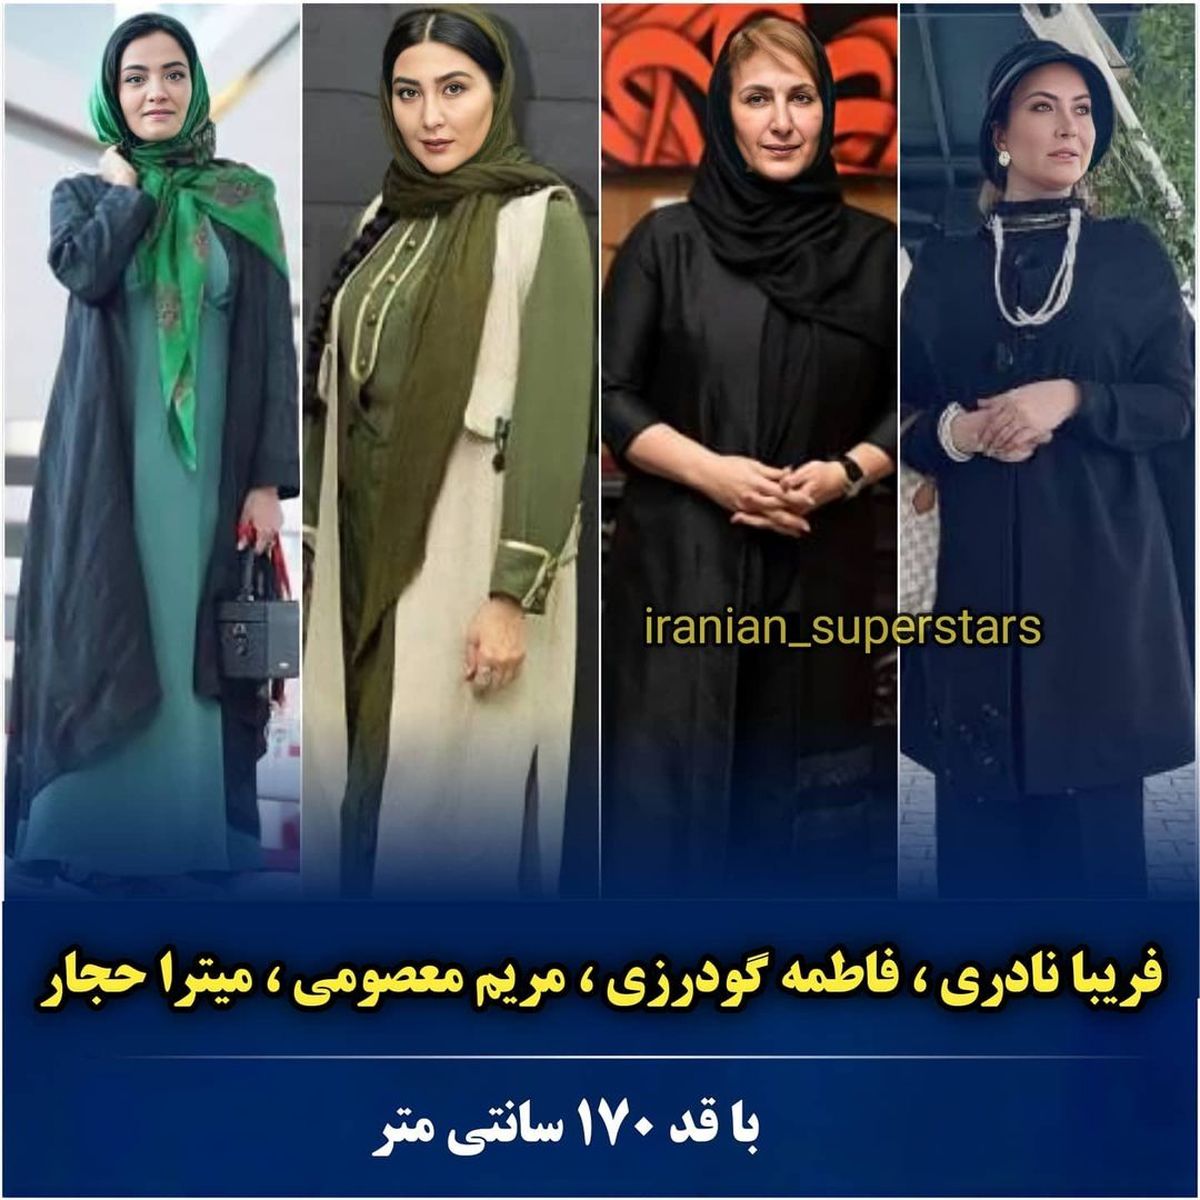 iranian_superstars_1626167754_3